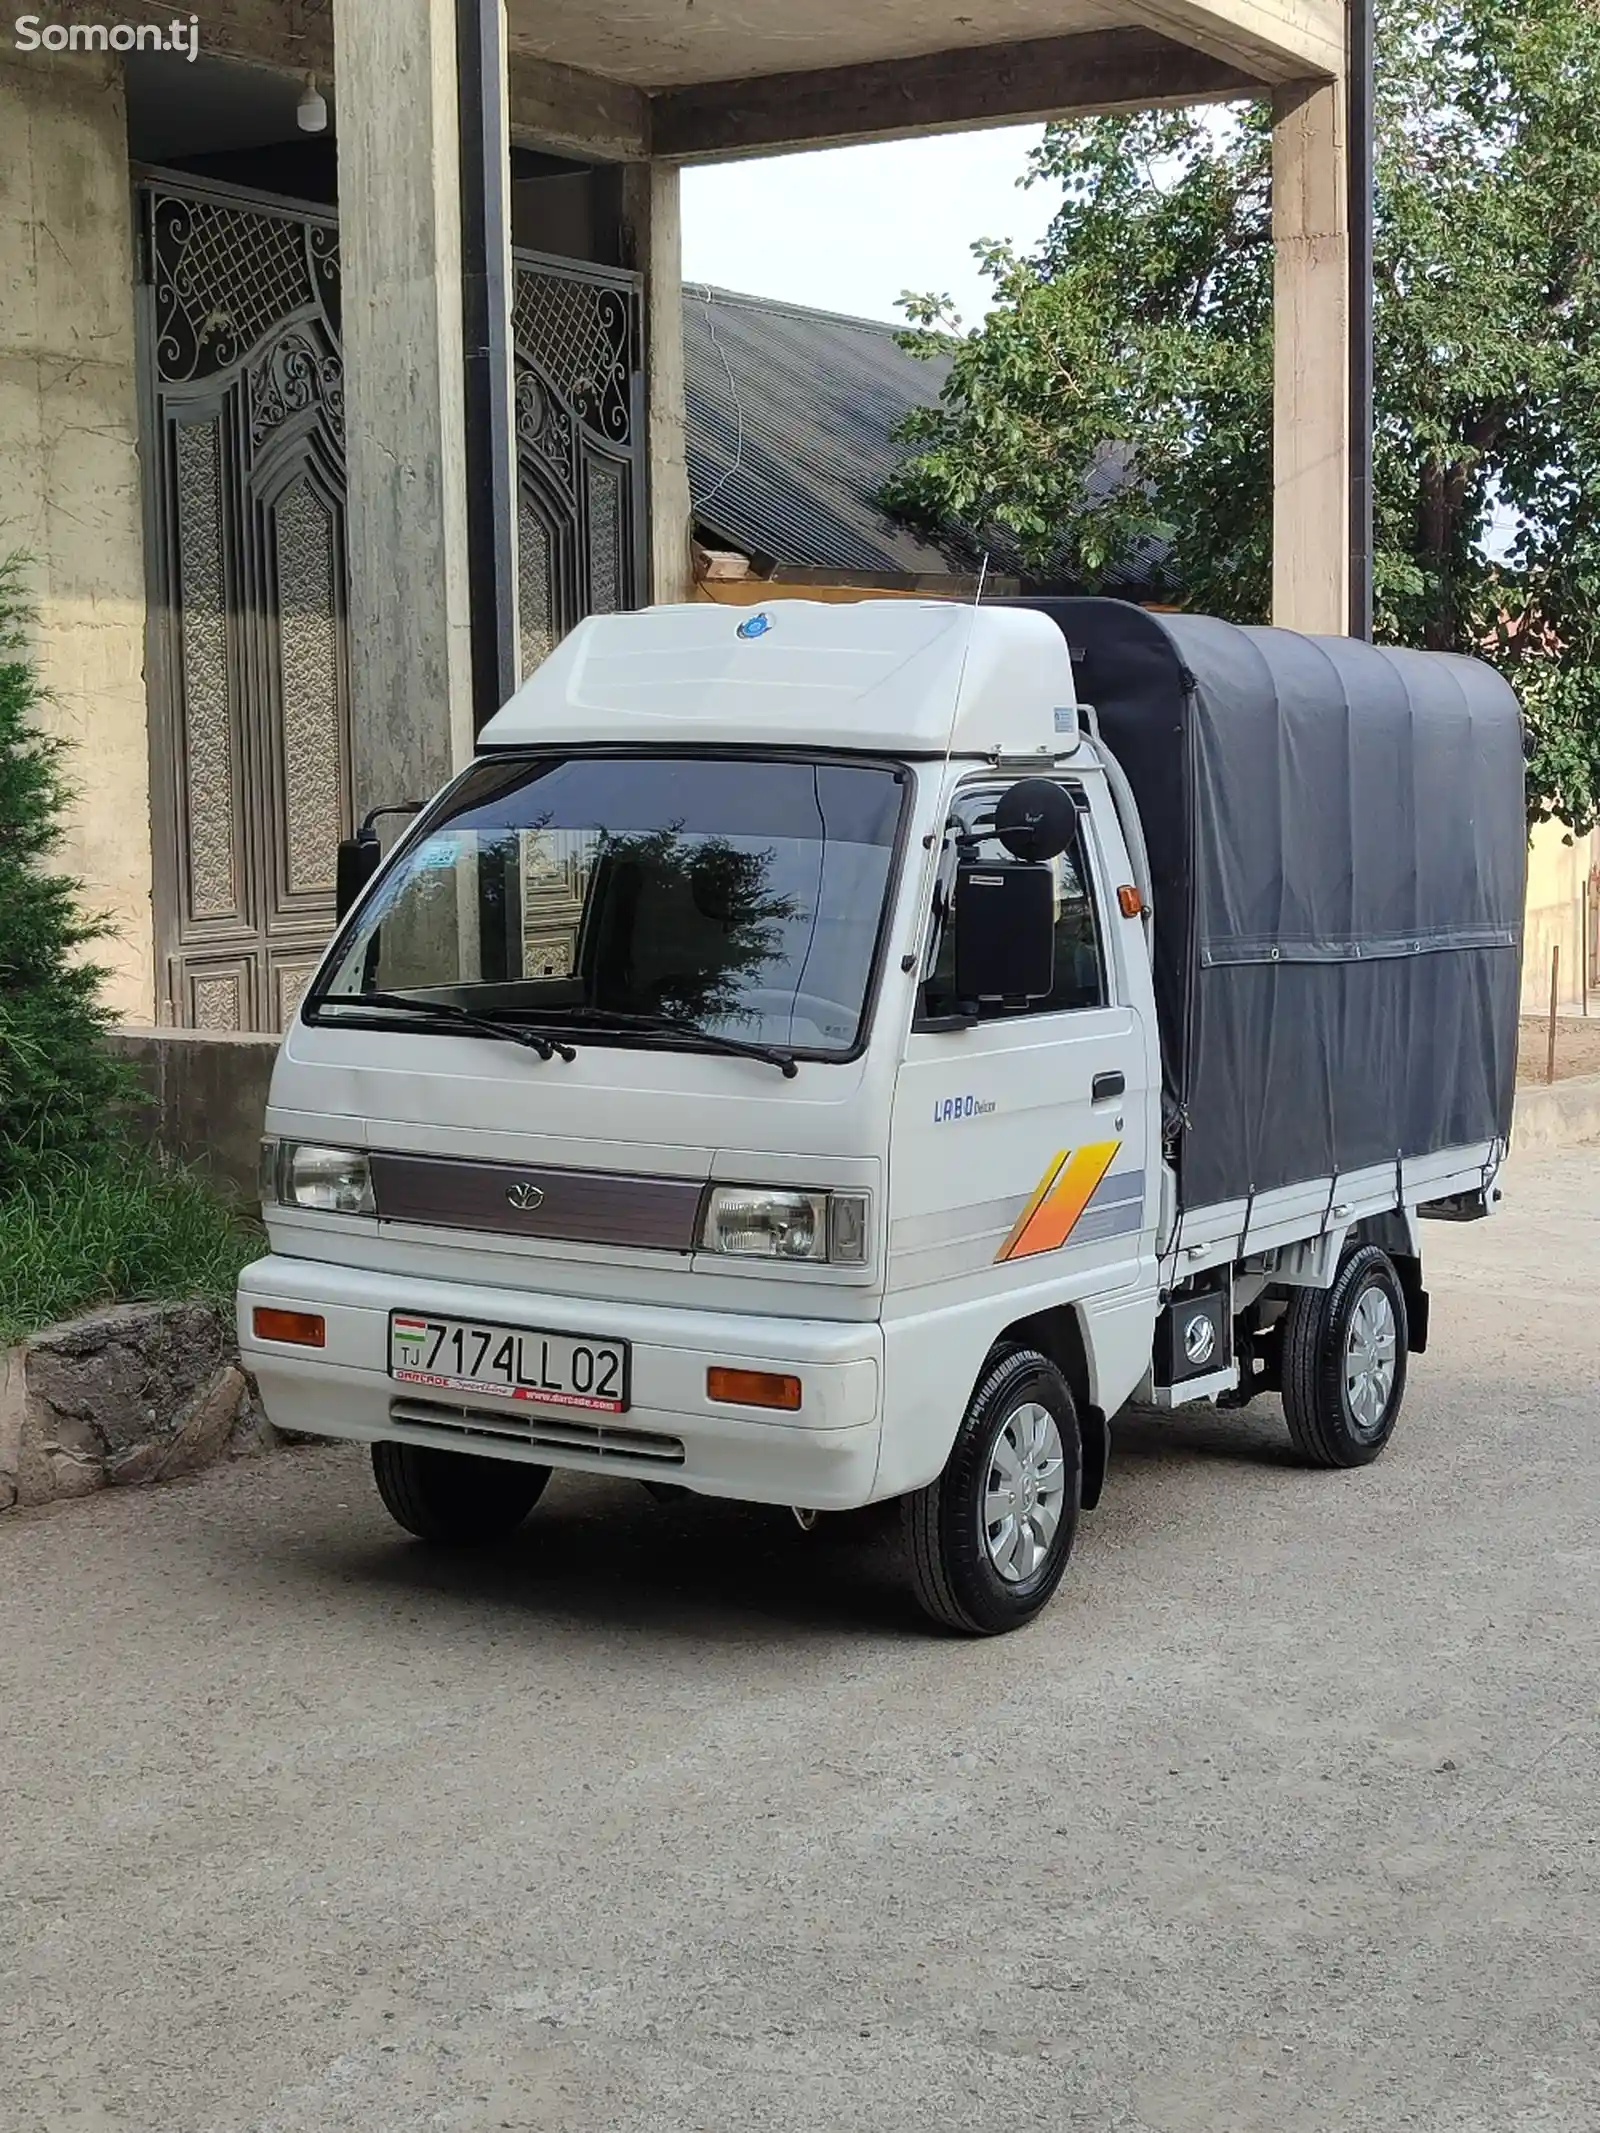 Бортовой автомобиль Daewoo Labo, 2013-1